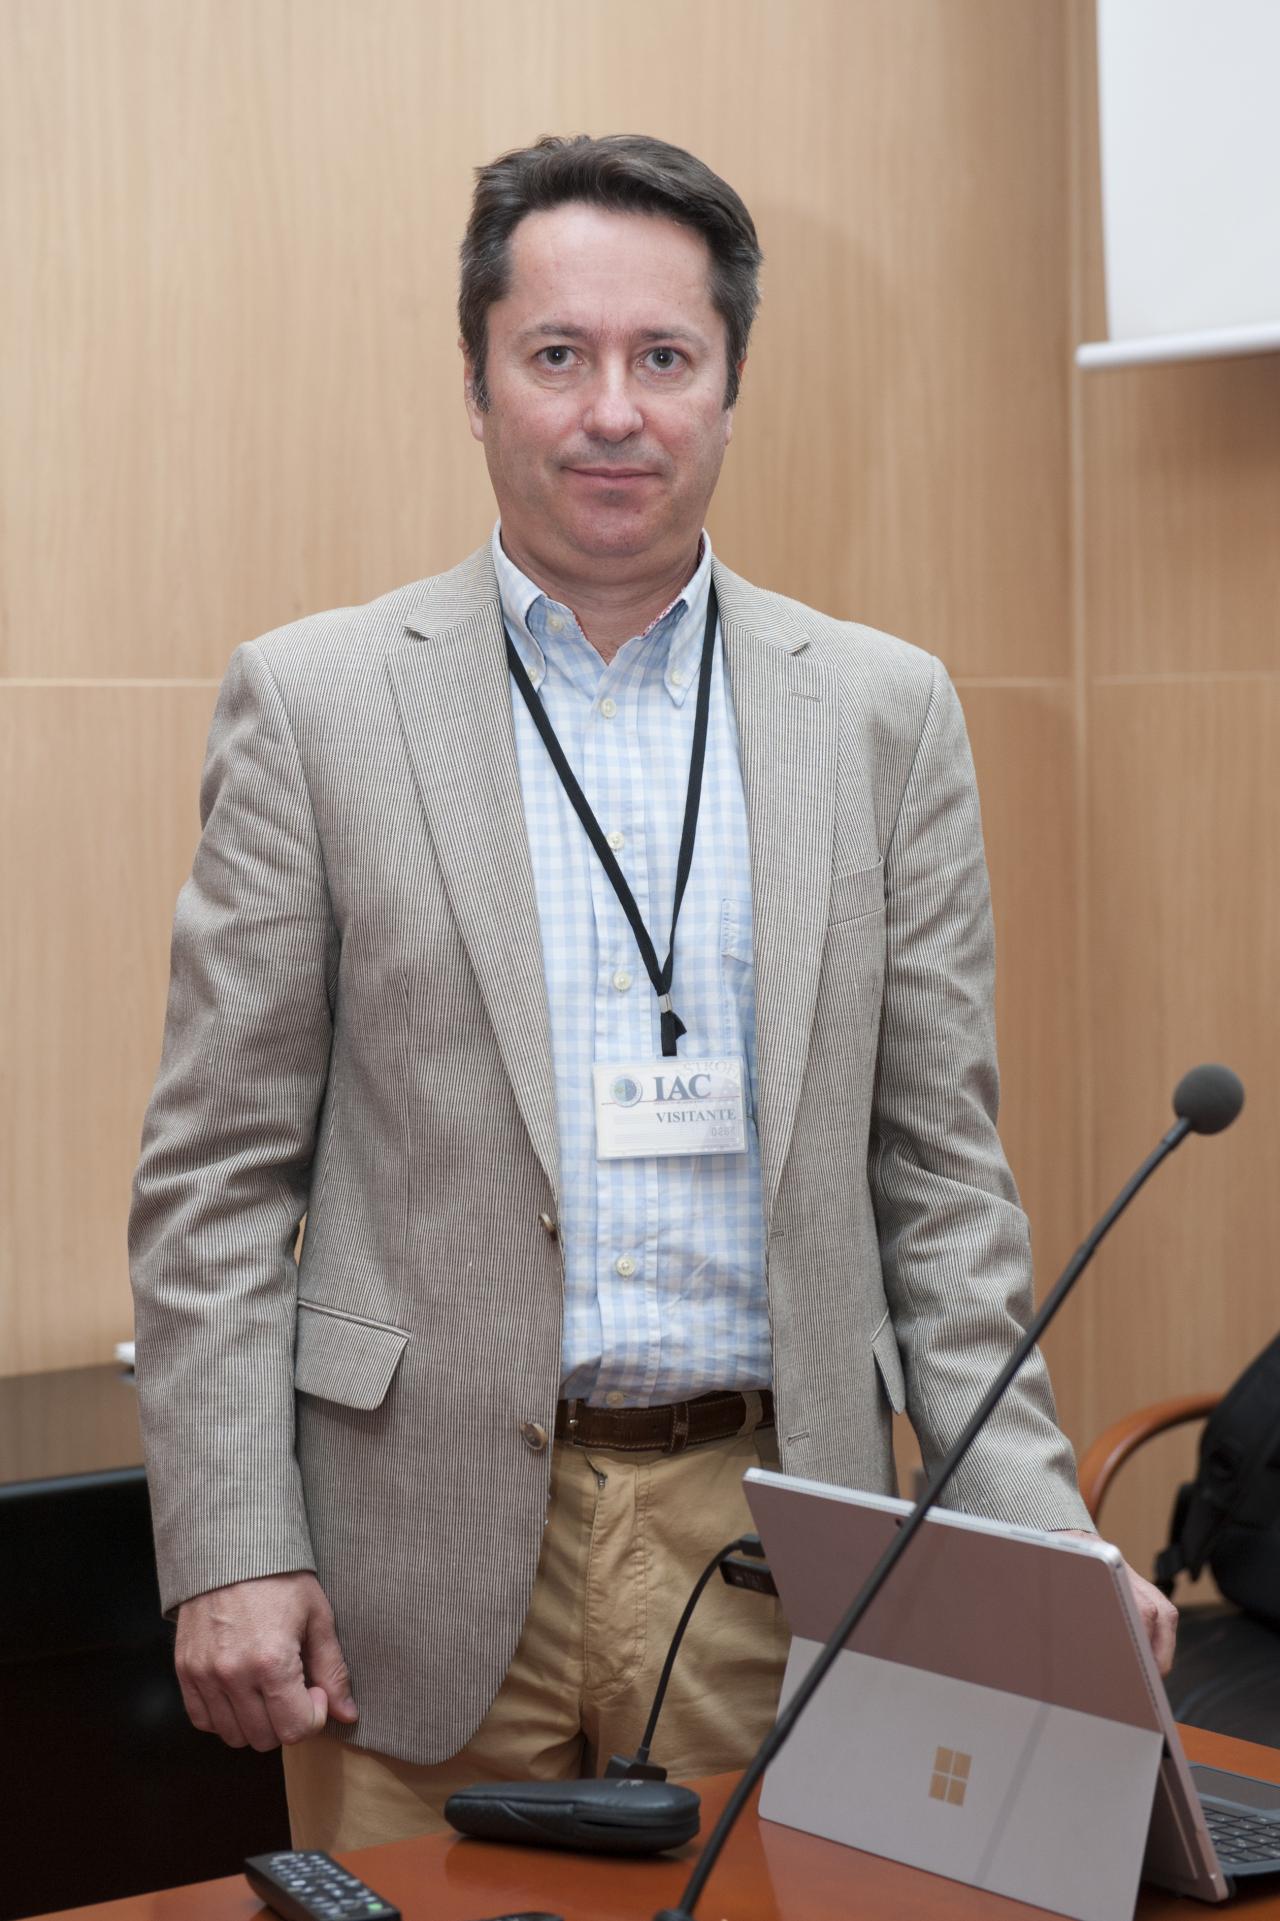 Ignacio Cirac, during his seminar at the IAC. Credit: Miguel Briganty, SMM (IAC).